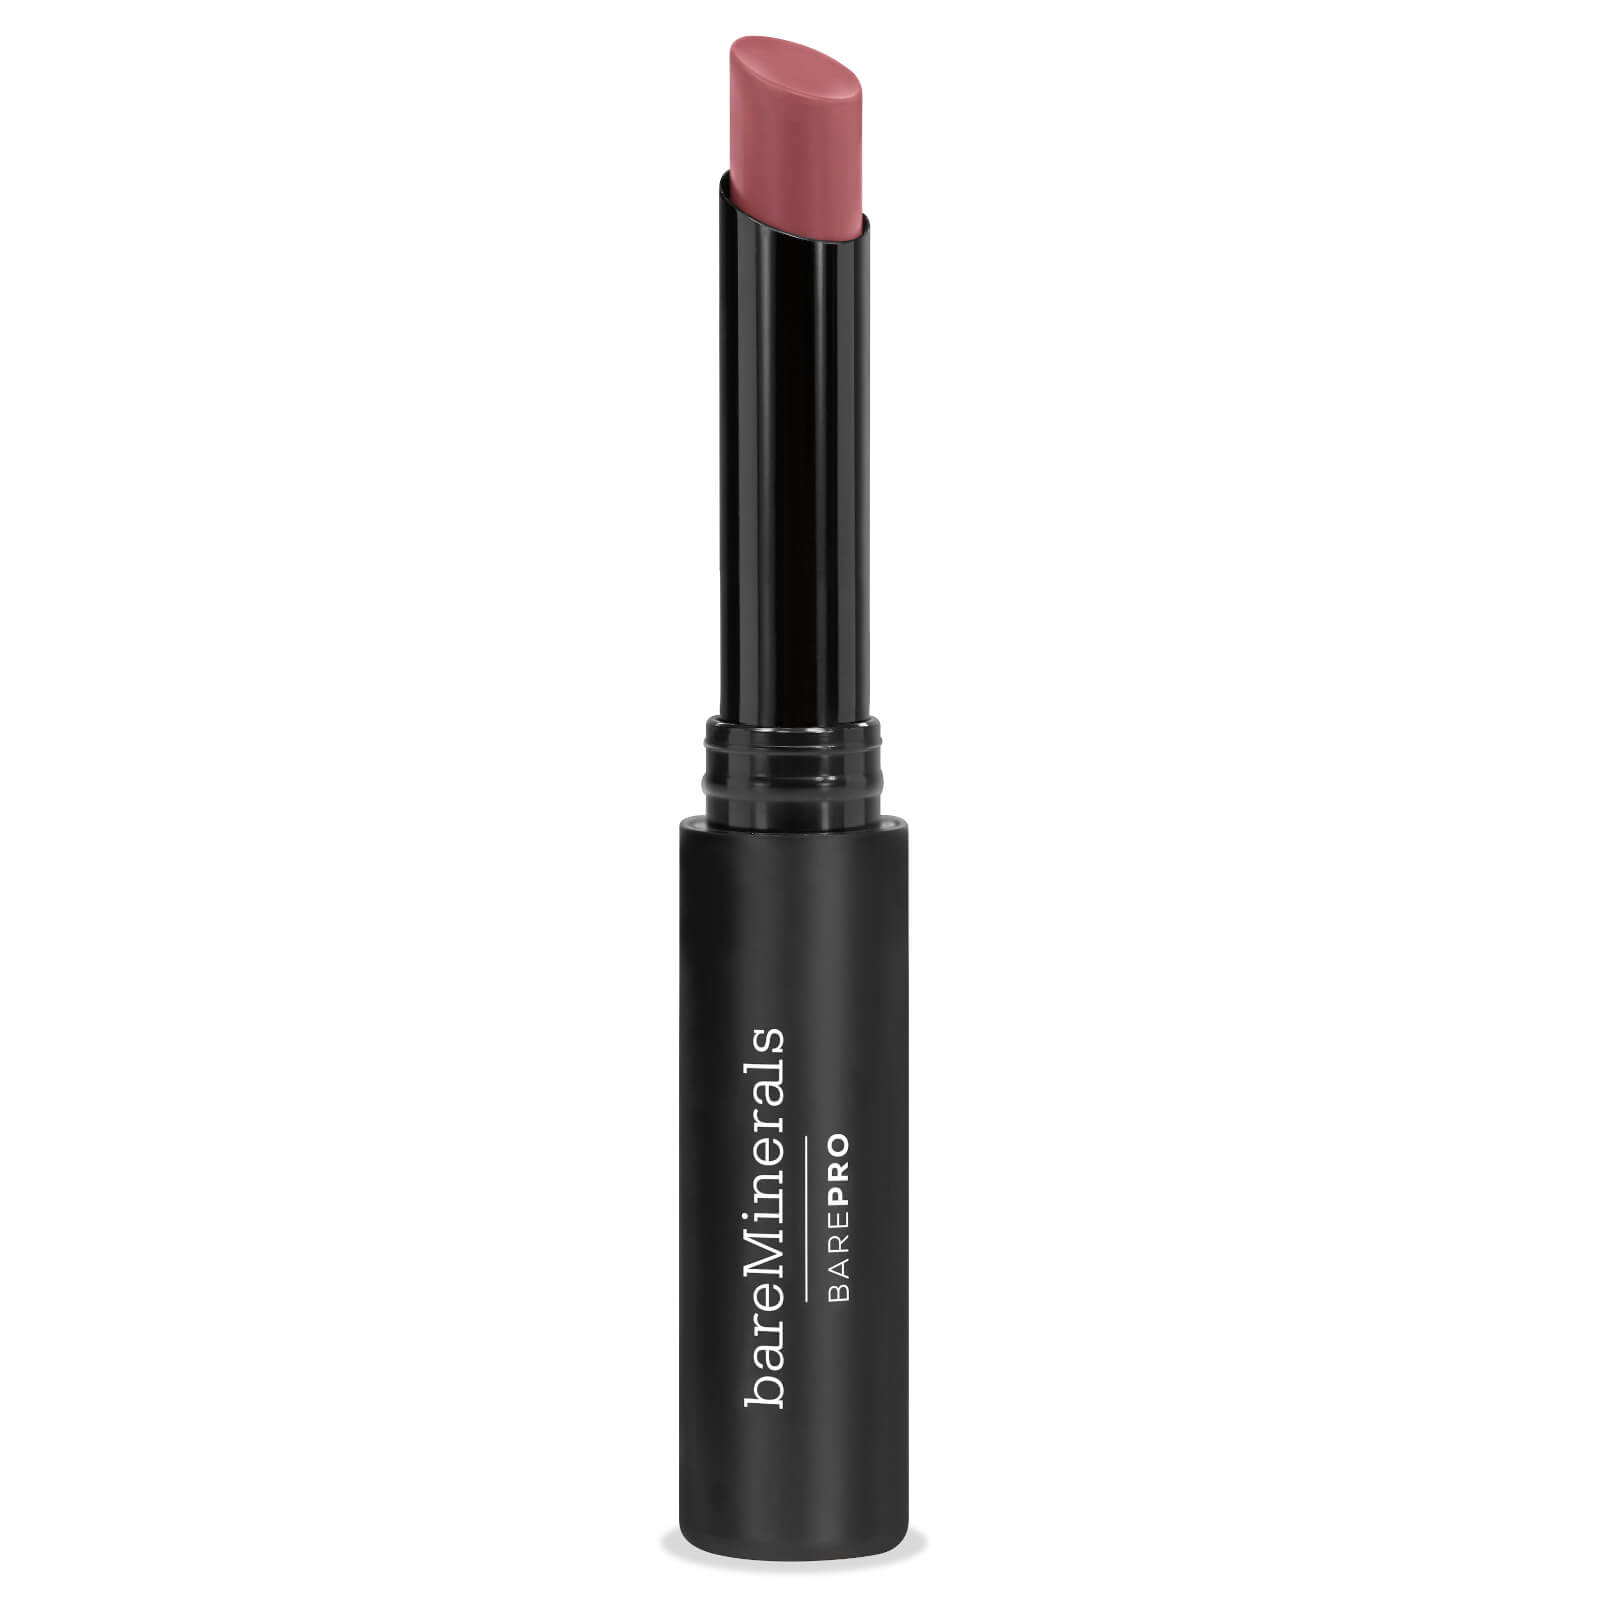 Bareminerals Barepro Longwear Lipstick (Forskellige Nuancer) - Petal